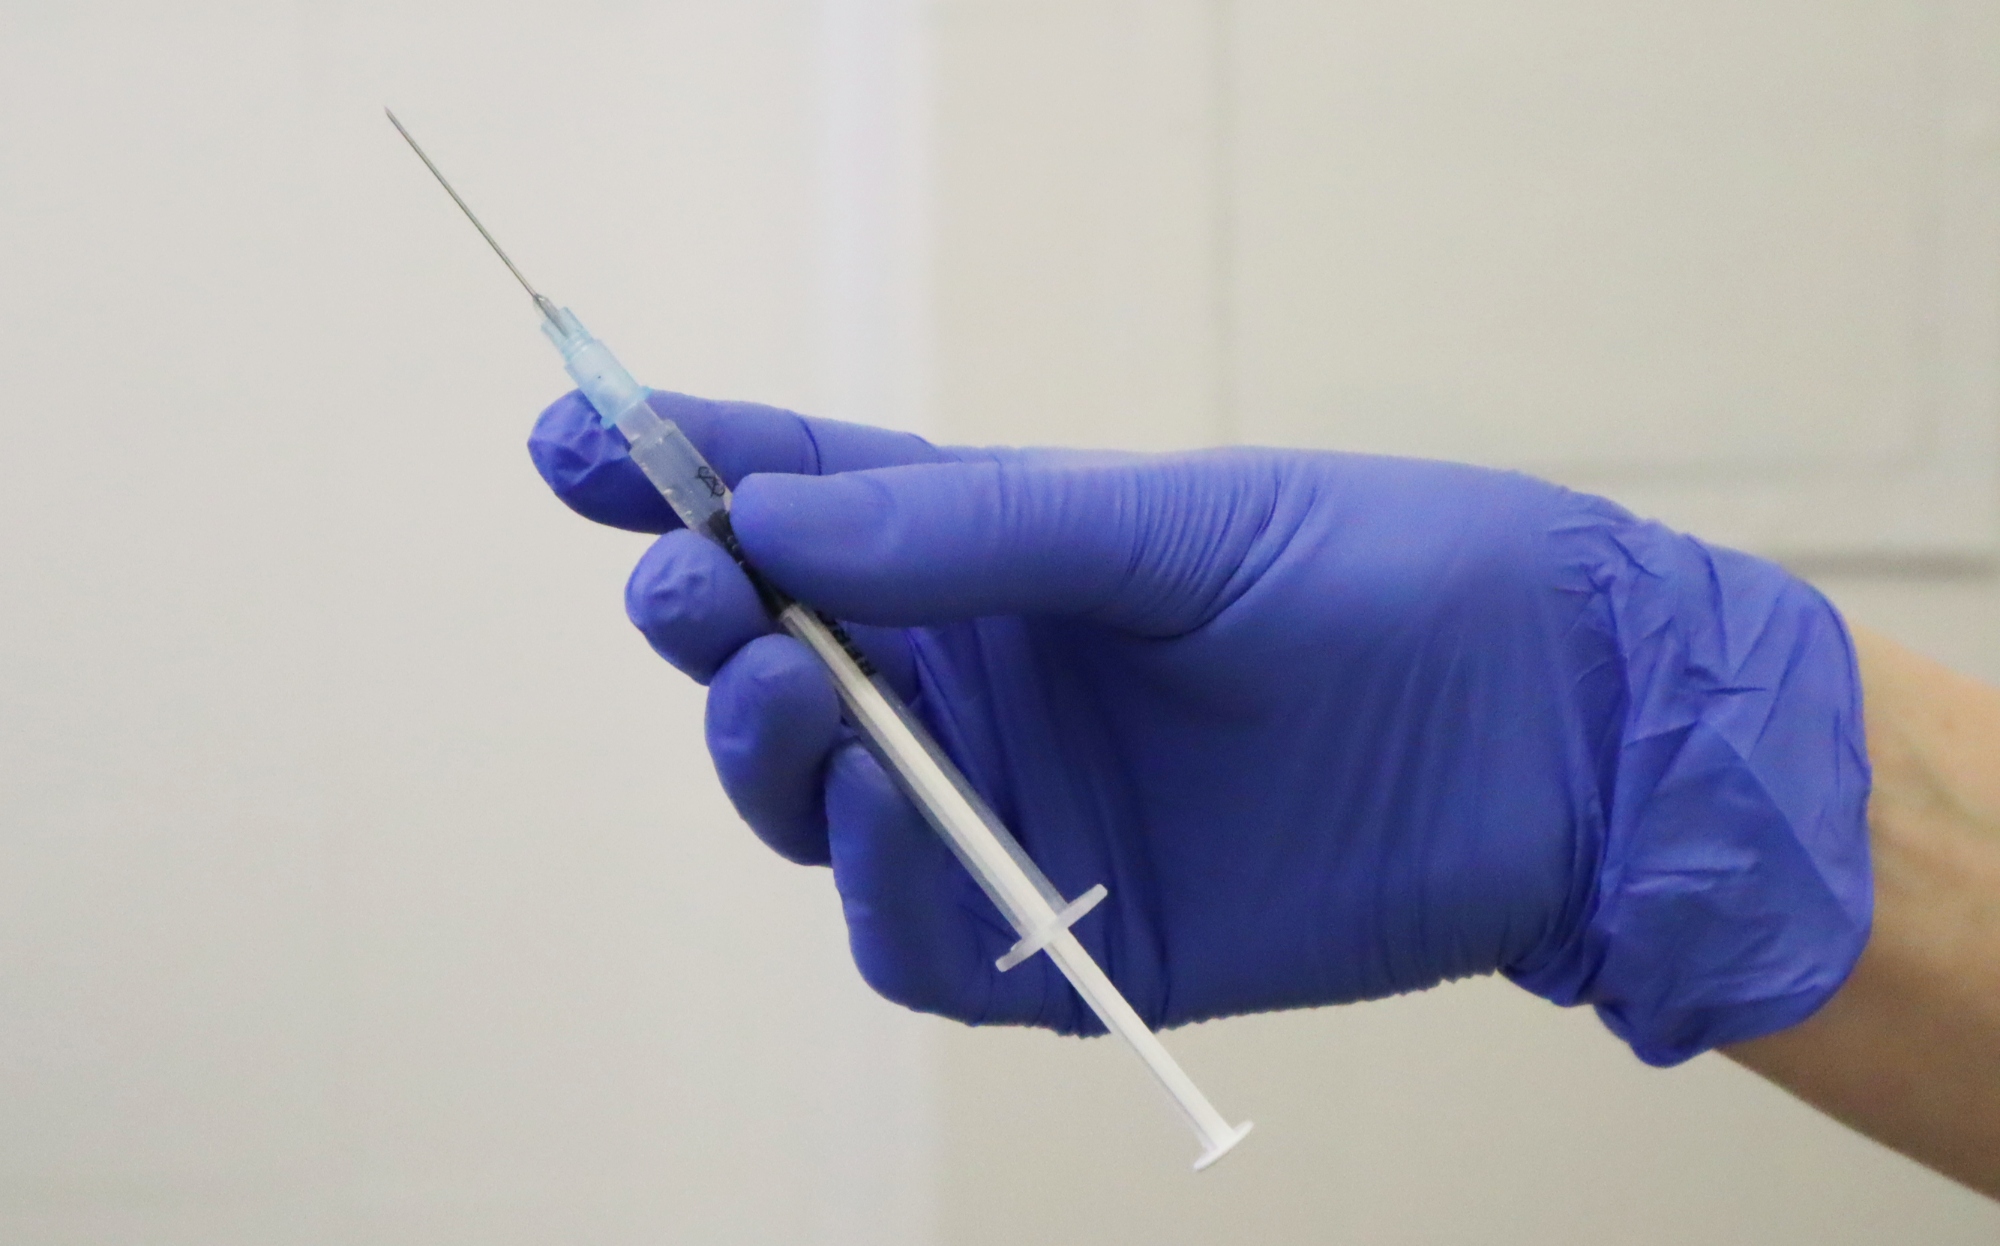 Nežádoucí účinky vakcín proti covidu-19: SÚKL podezírá dalších 311 případů